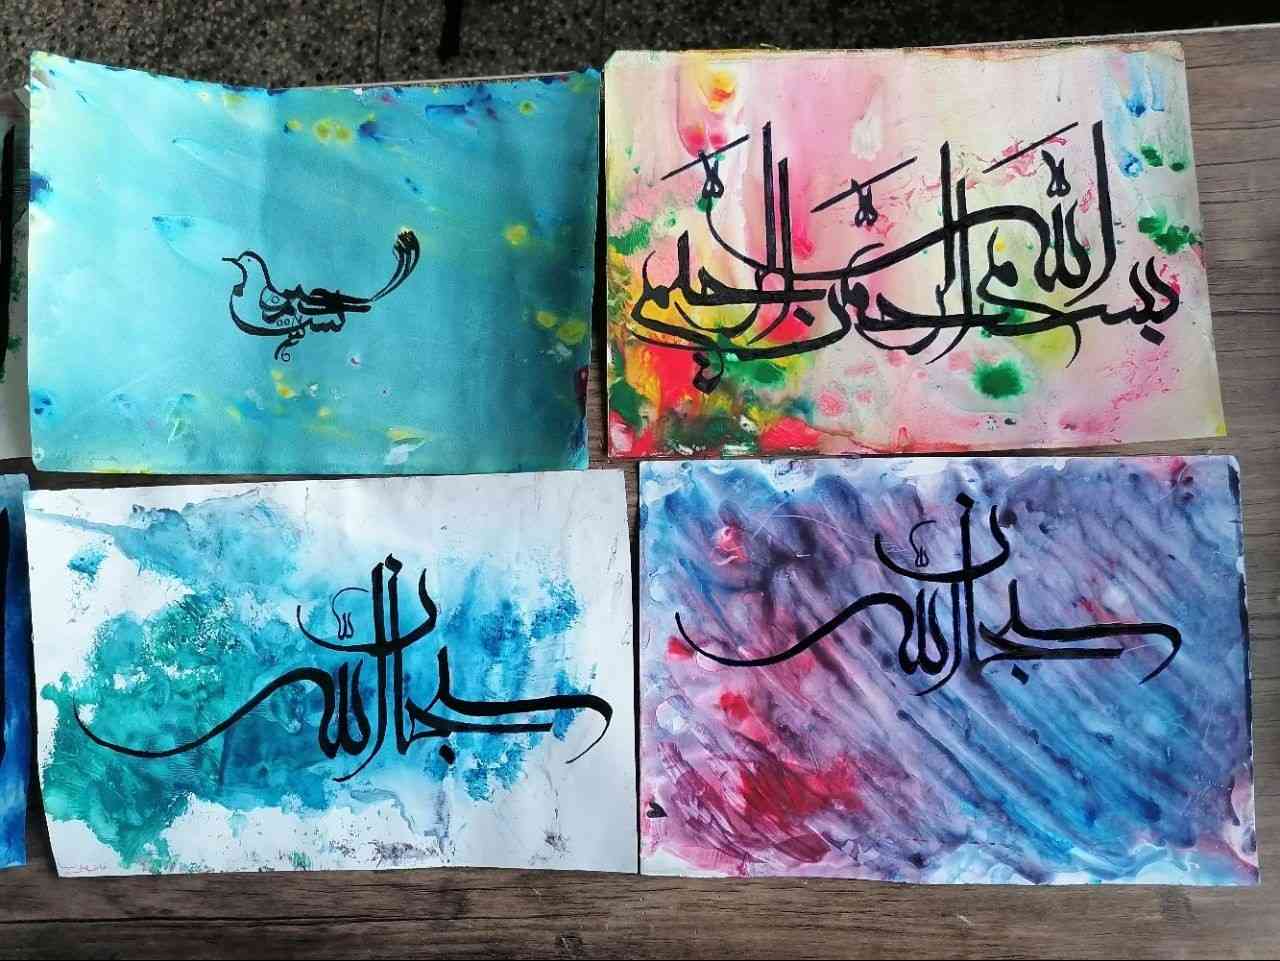 سلام خوبید چجوری باید نقاشیط درست کنیم ،راهنمایی کنید ، باید با بسم الله الرحمن الرحیم  درست کنم ،لطفا سریع بگید ، عجله دارم.
